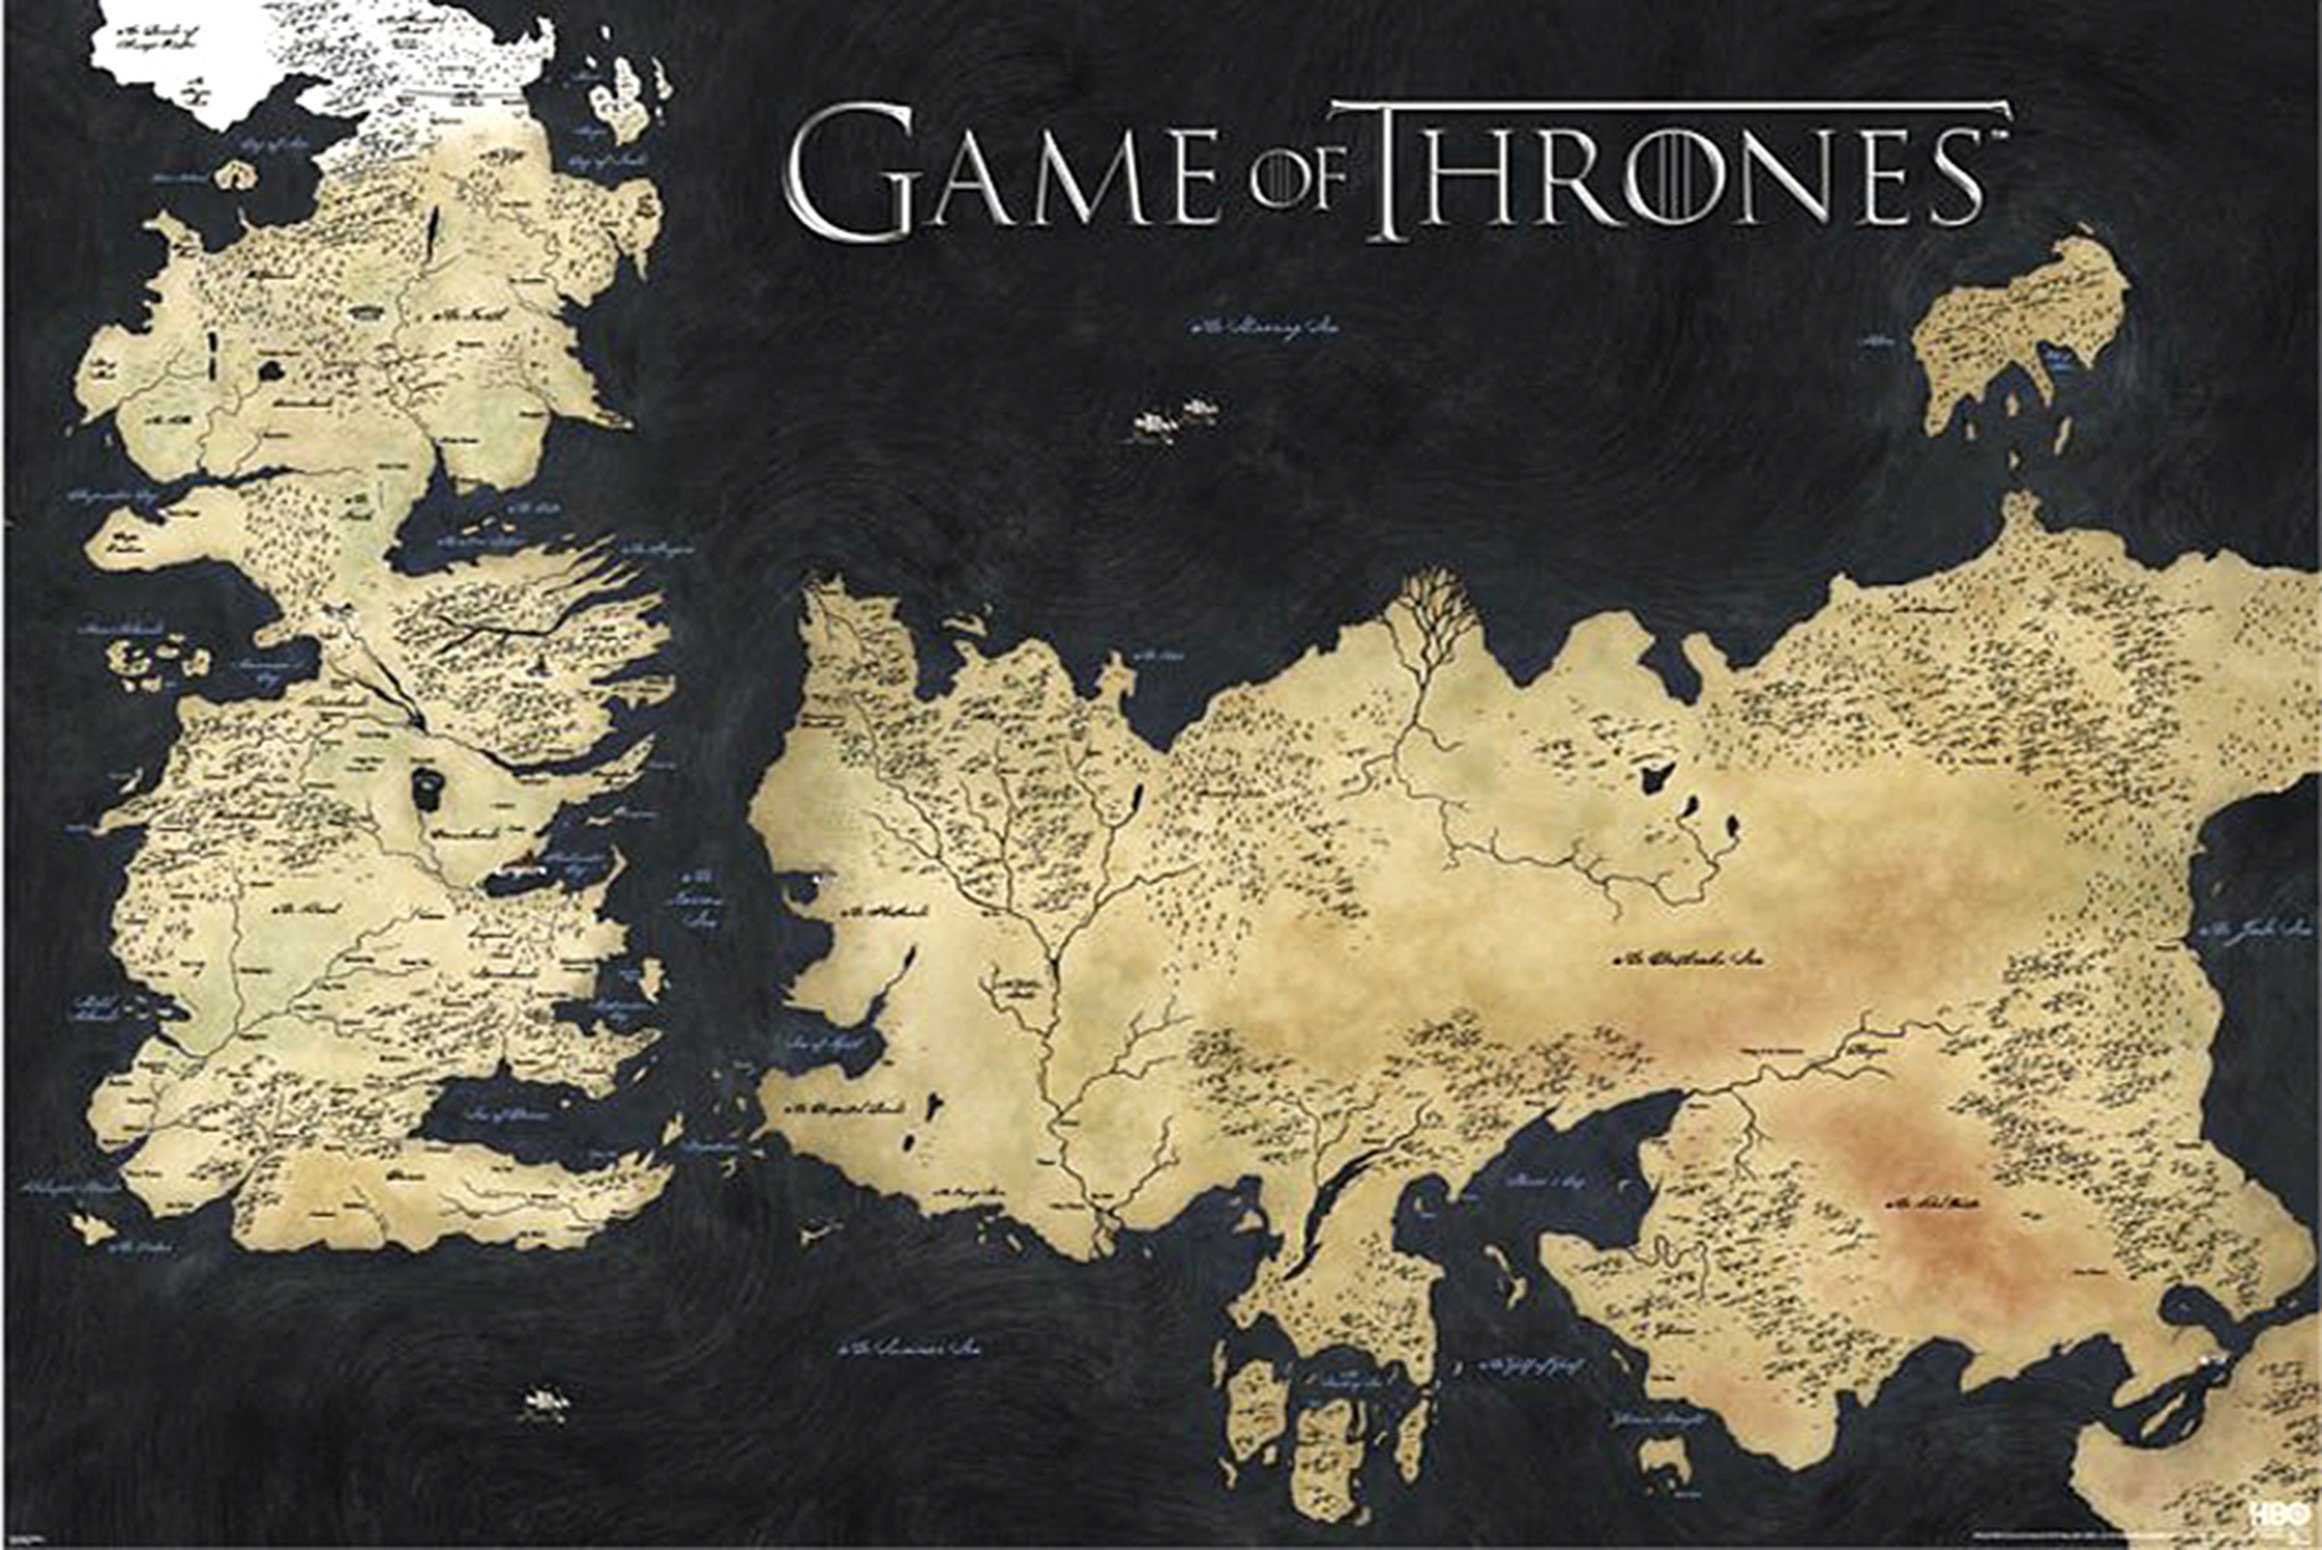 PYRAMID Poster Game of Thrones Poster Die sieben Königslande 91,5 x 61 cm